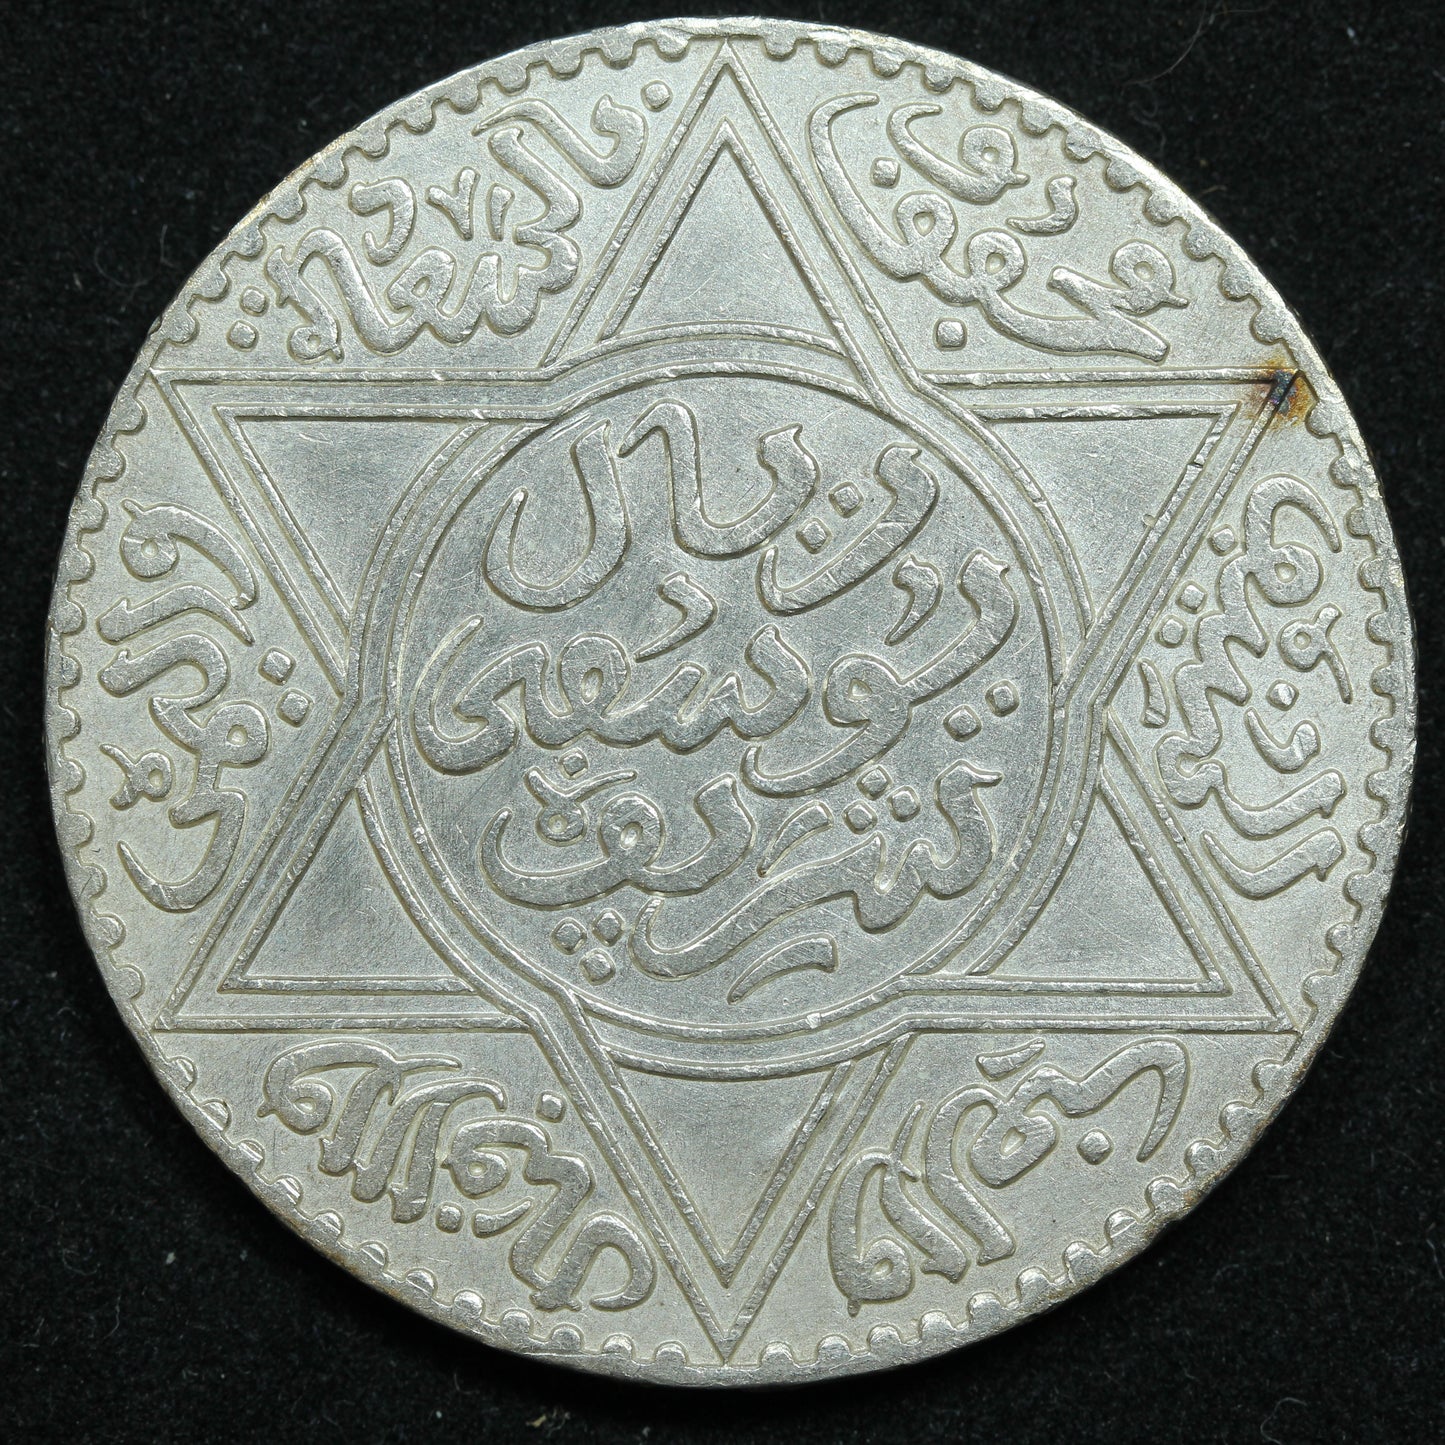 1913 (1331) Morocco Rial (10 Dirhams) Silver Coin  - Y# 33